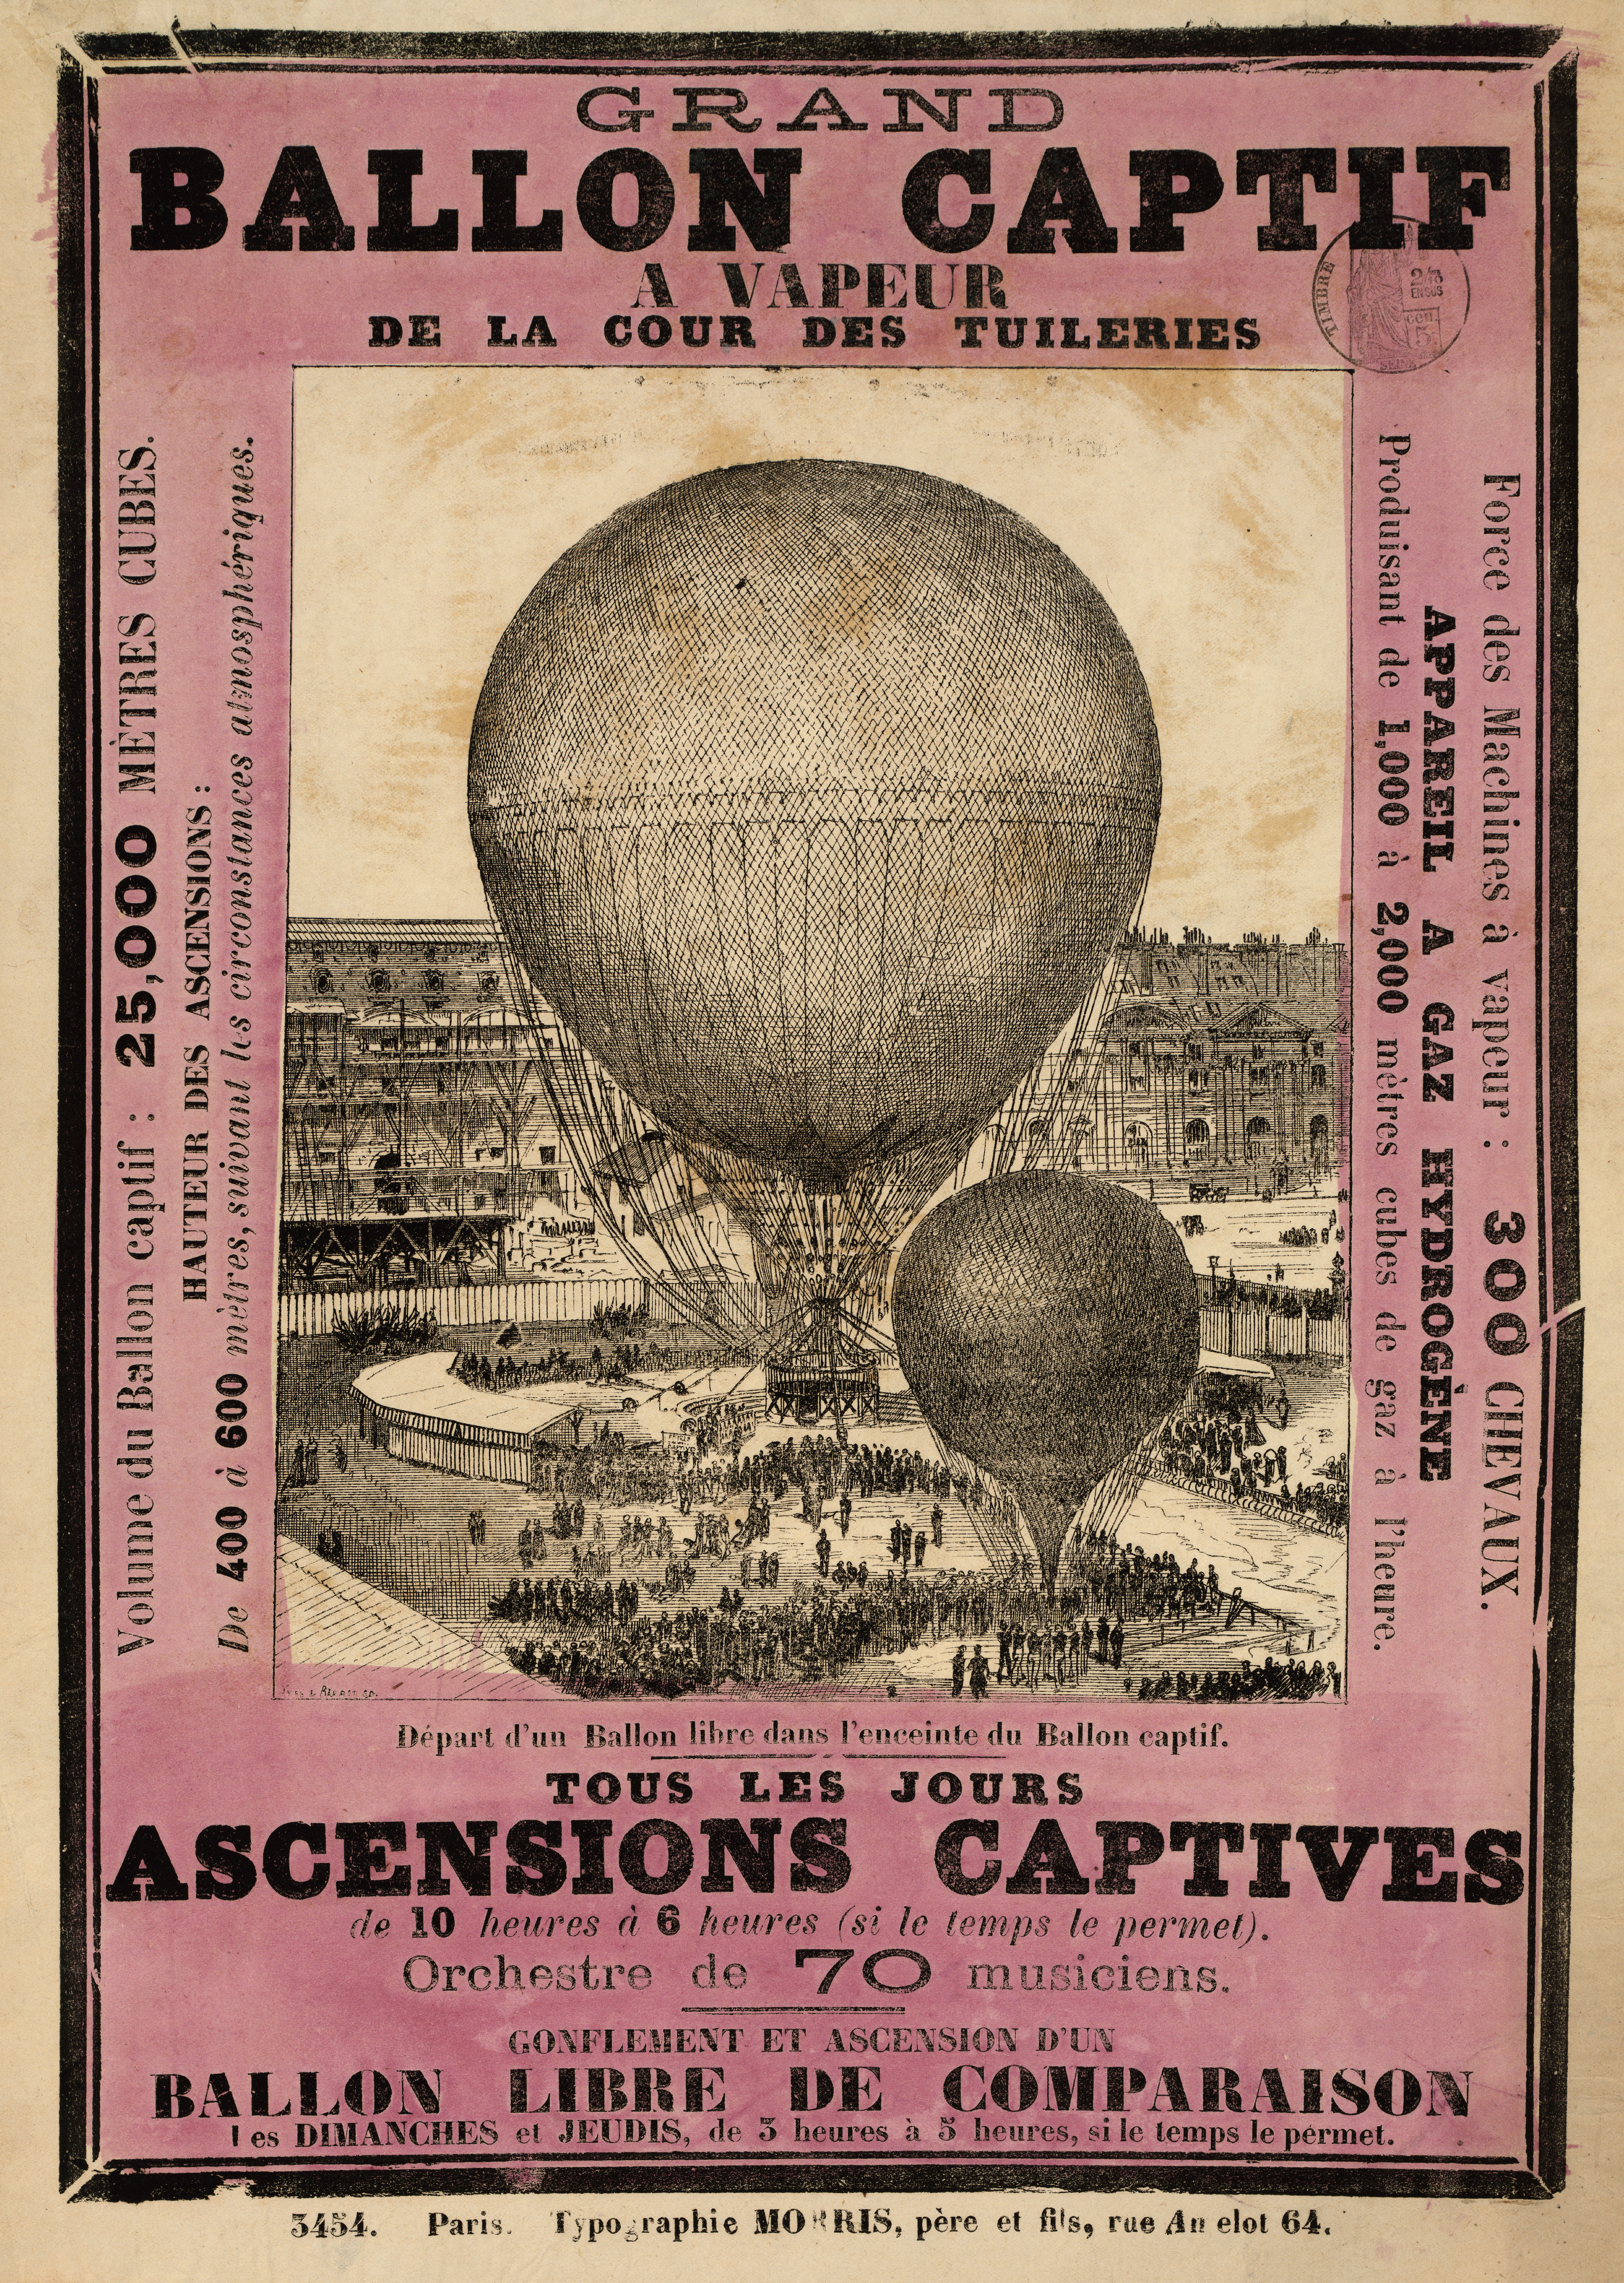 Grand ballon captif a vapeur de la cour des Tuileries, broadsheet, Paris, 1878